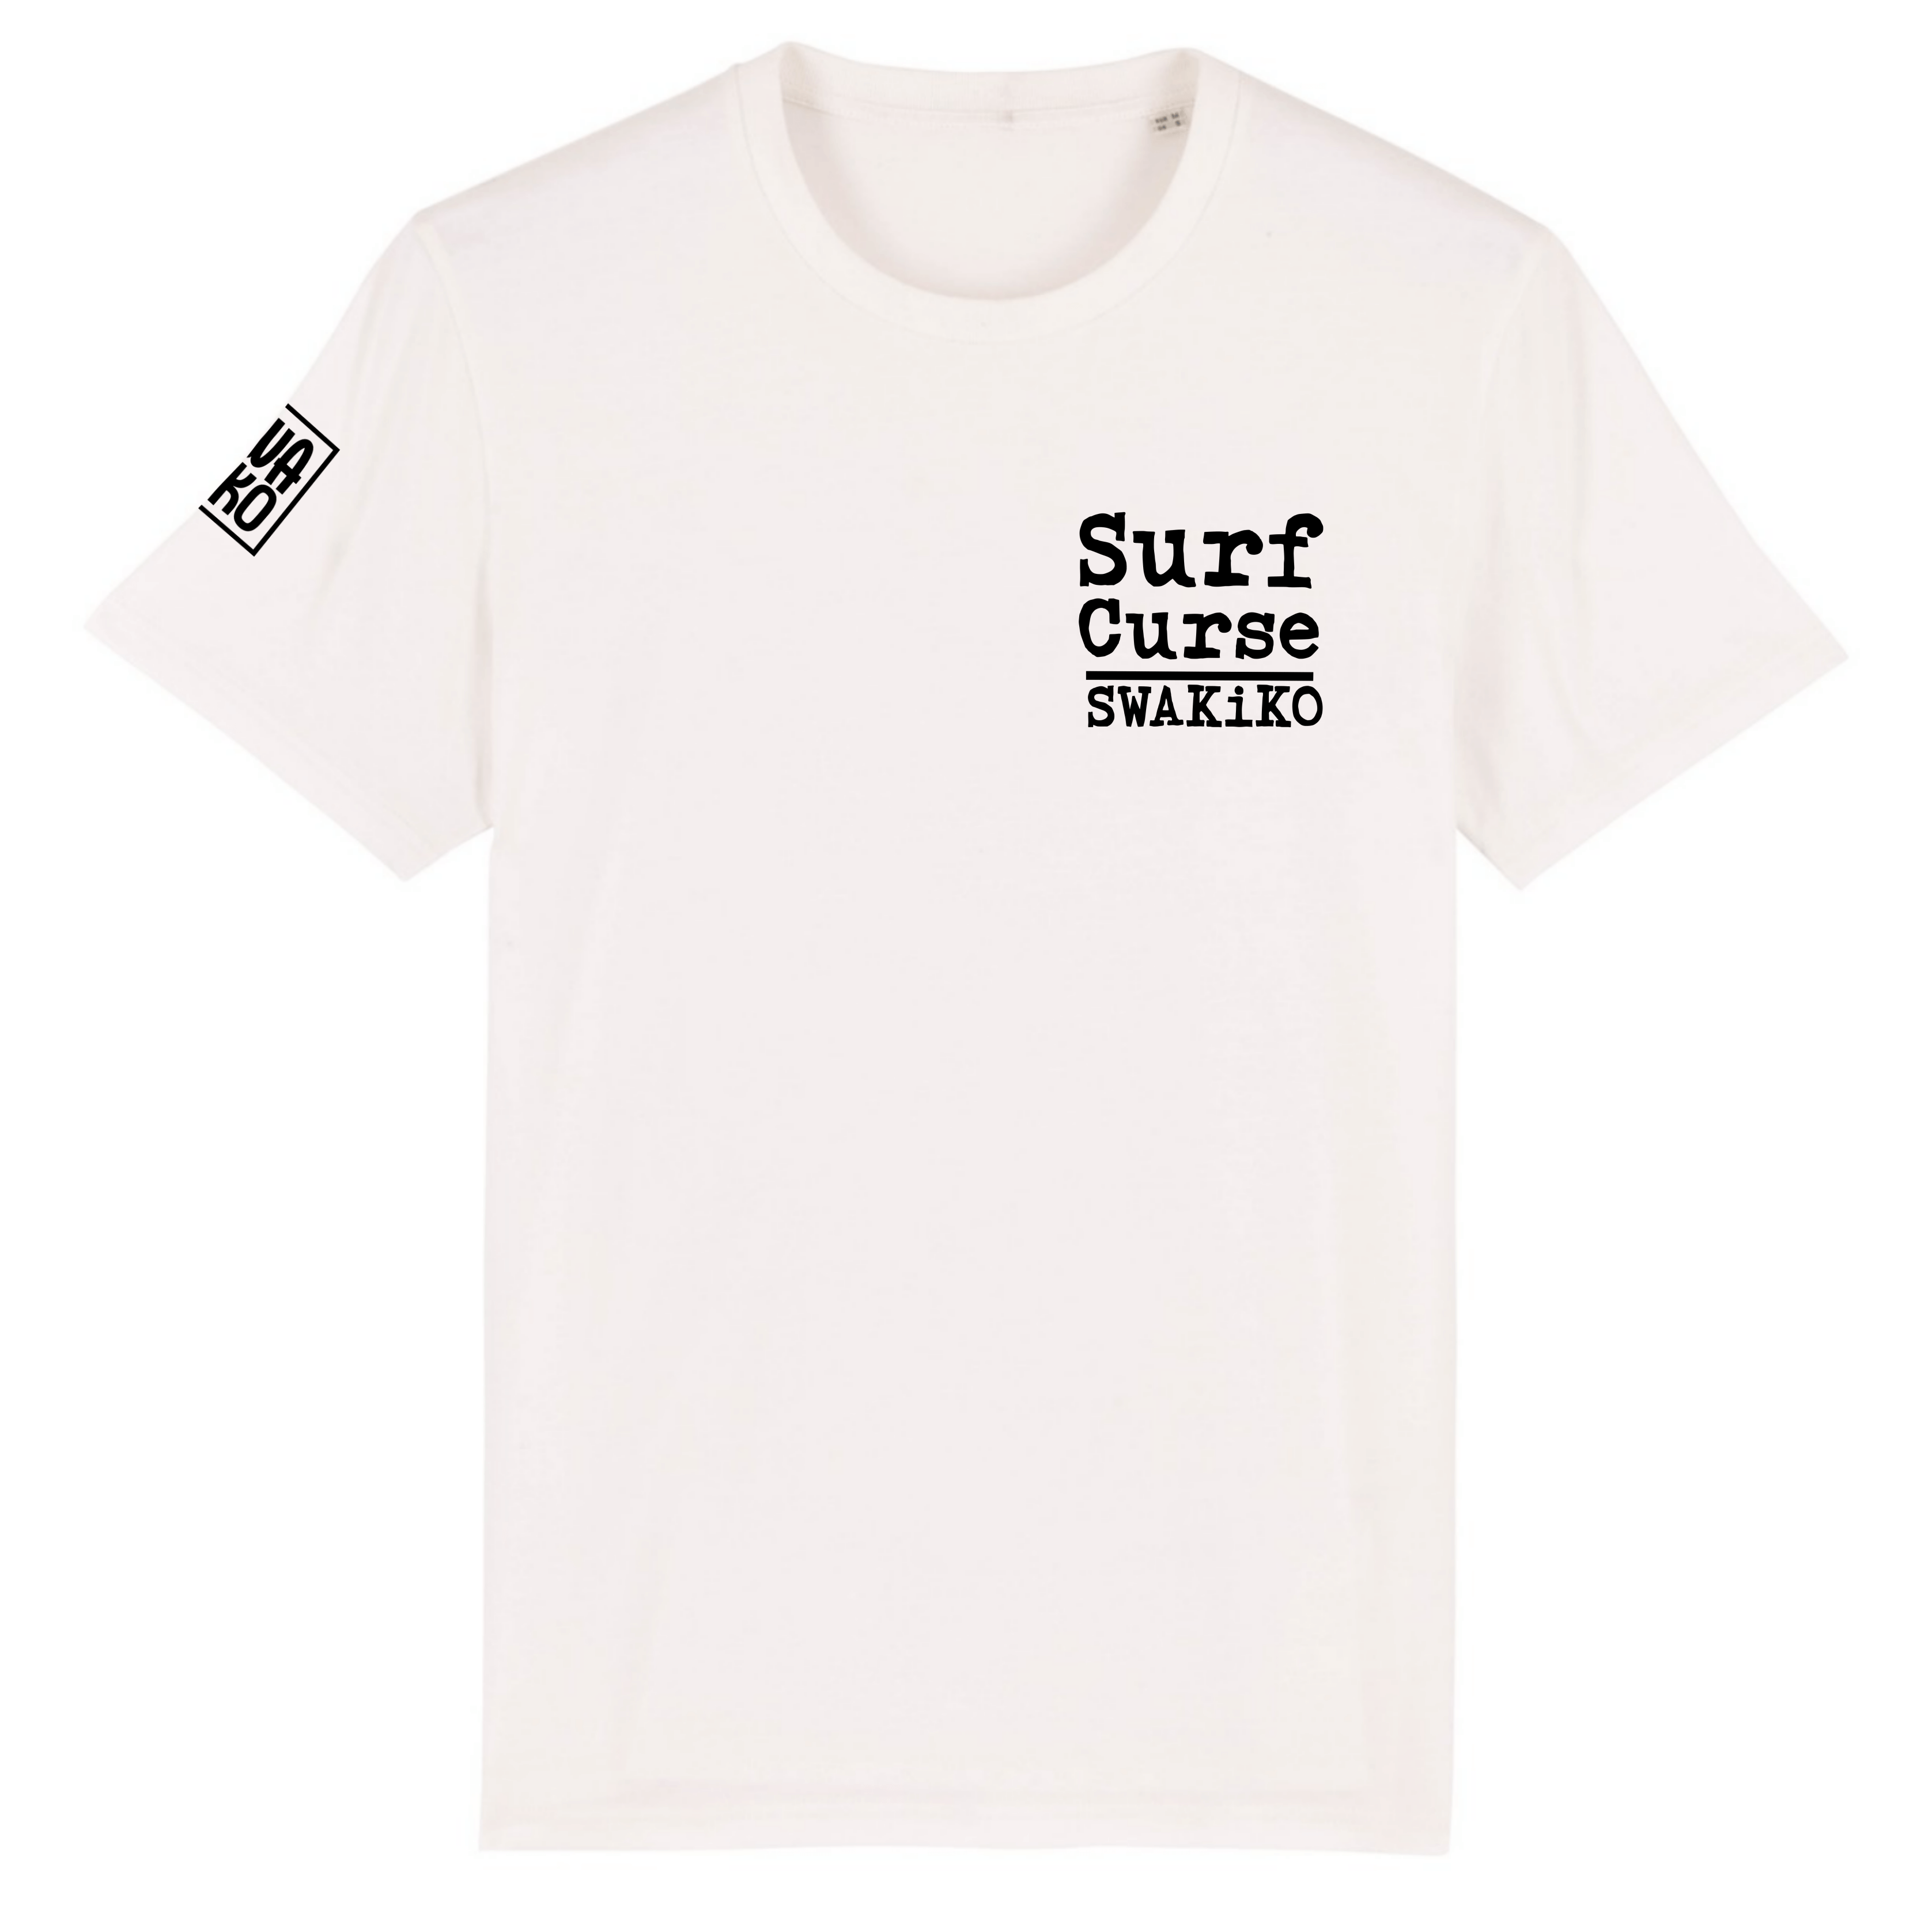 Surf Curse Surf T-shirt white front